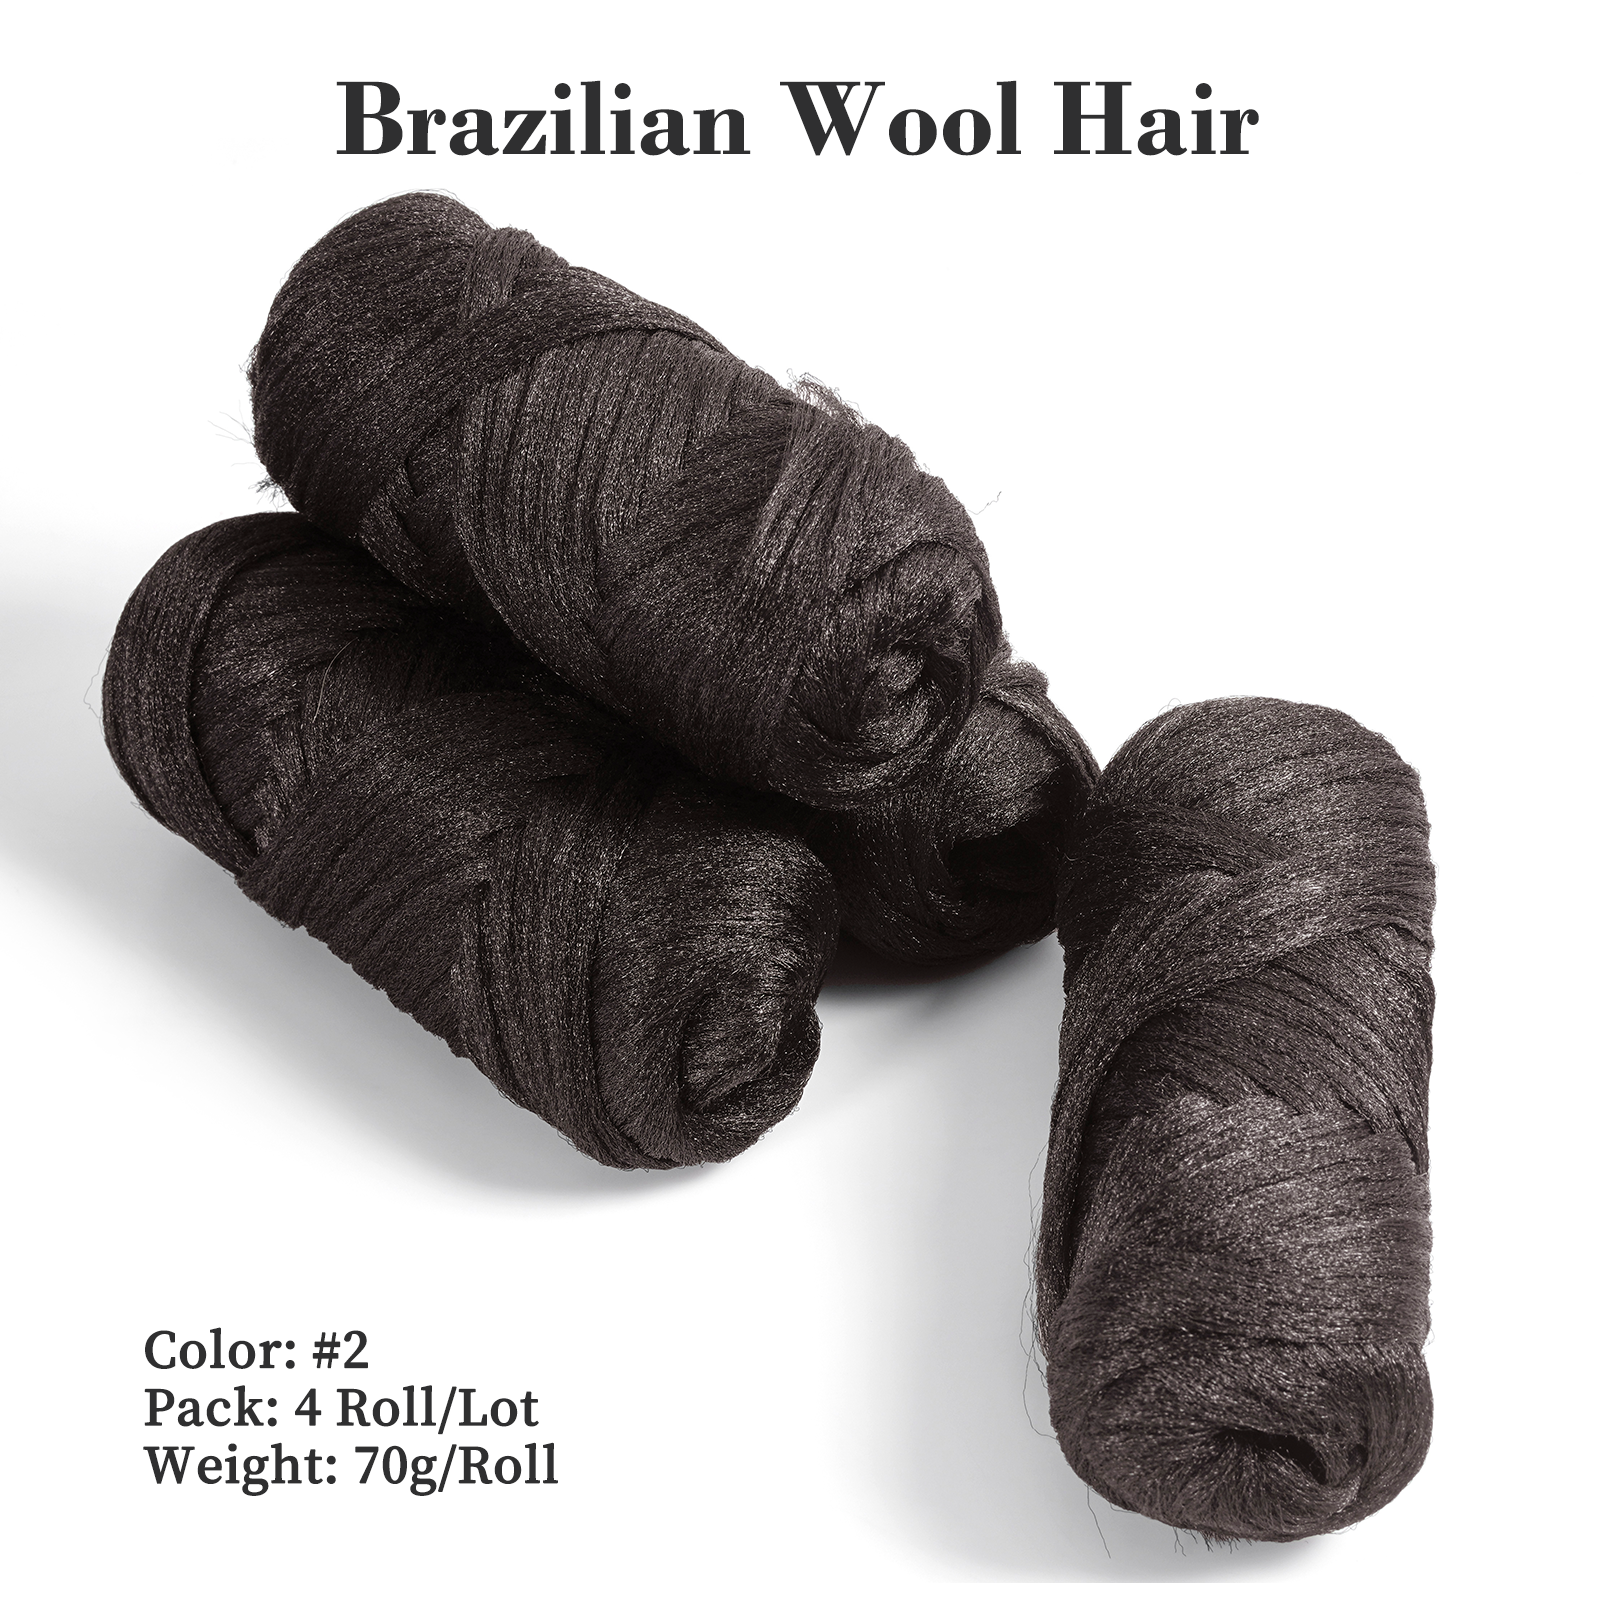 Modpion 5Roll Brazilian Yarn Wool Hair Arylic Yarn for Hair Crochet Braid Twist Warps Black Color